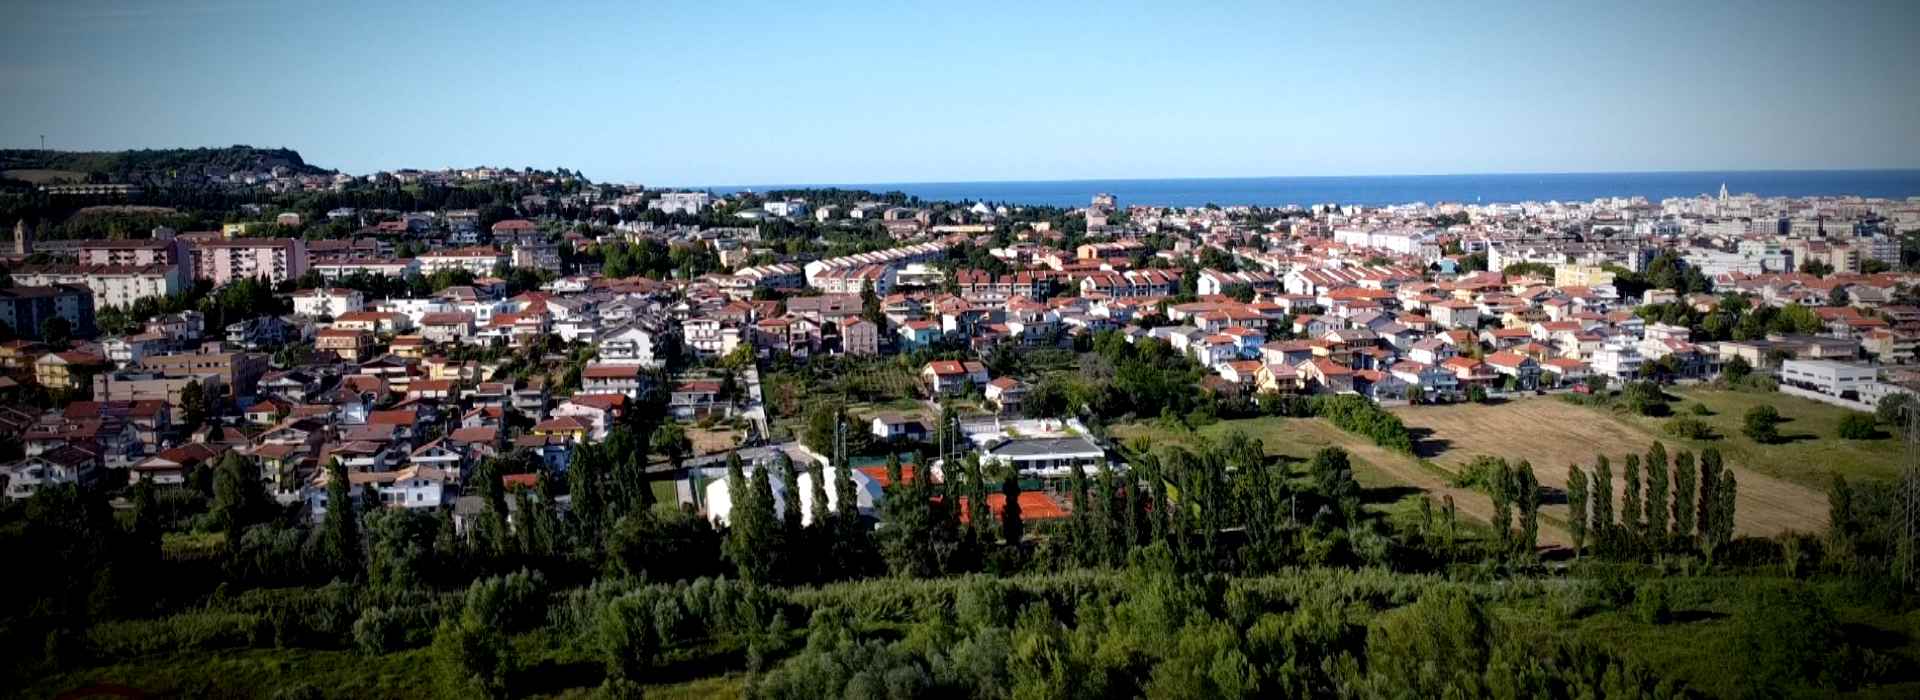 Pescara: il viaggio di Zone d'Ombra Tv nei quartieri dello spaccio